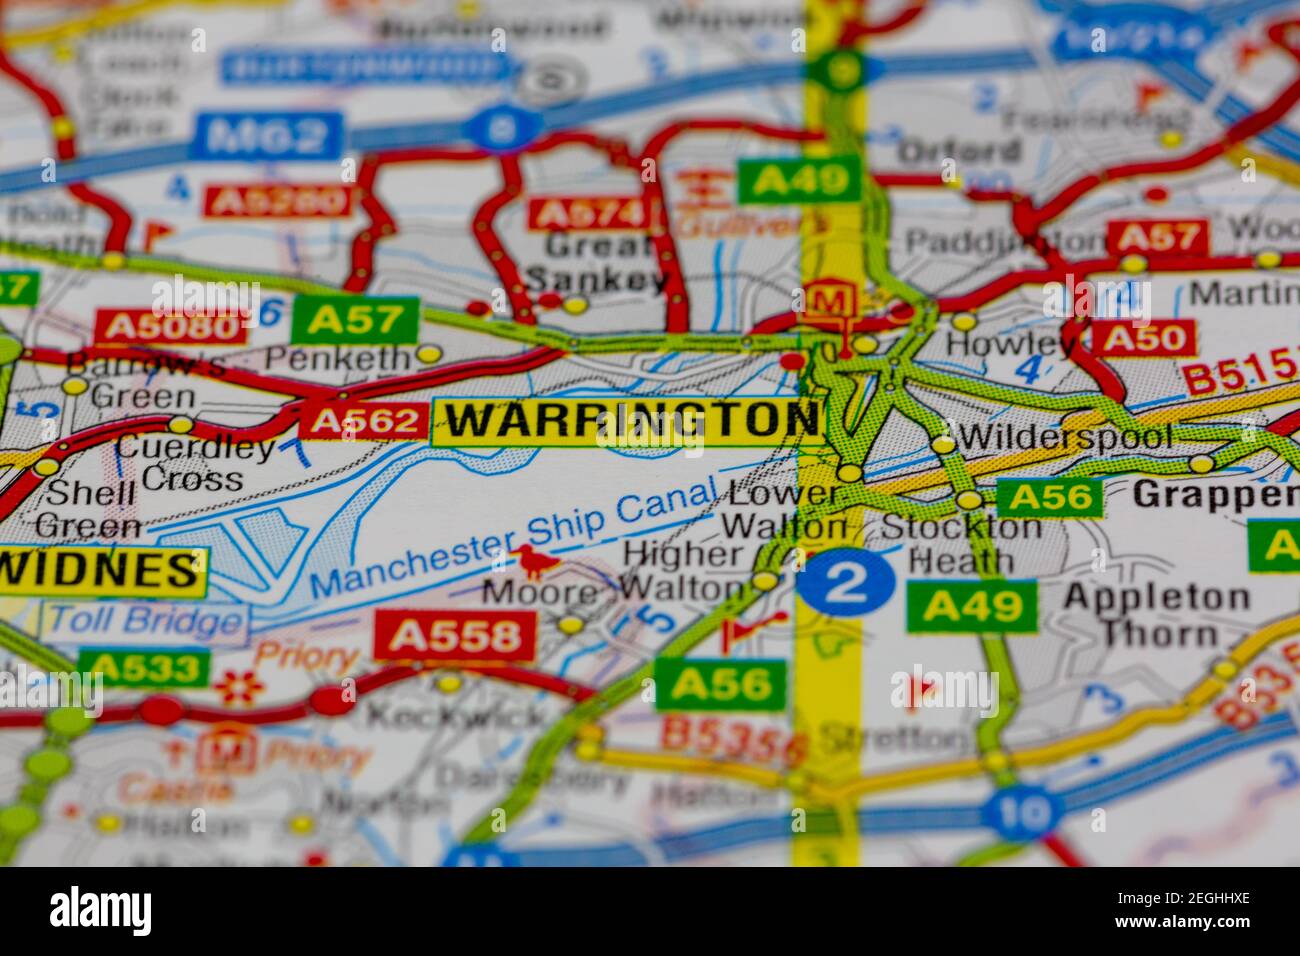 Warrington y sus alrededores se muestran en un mapa de carreteras o. mapa geográfico Foto de stock